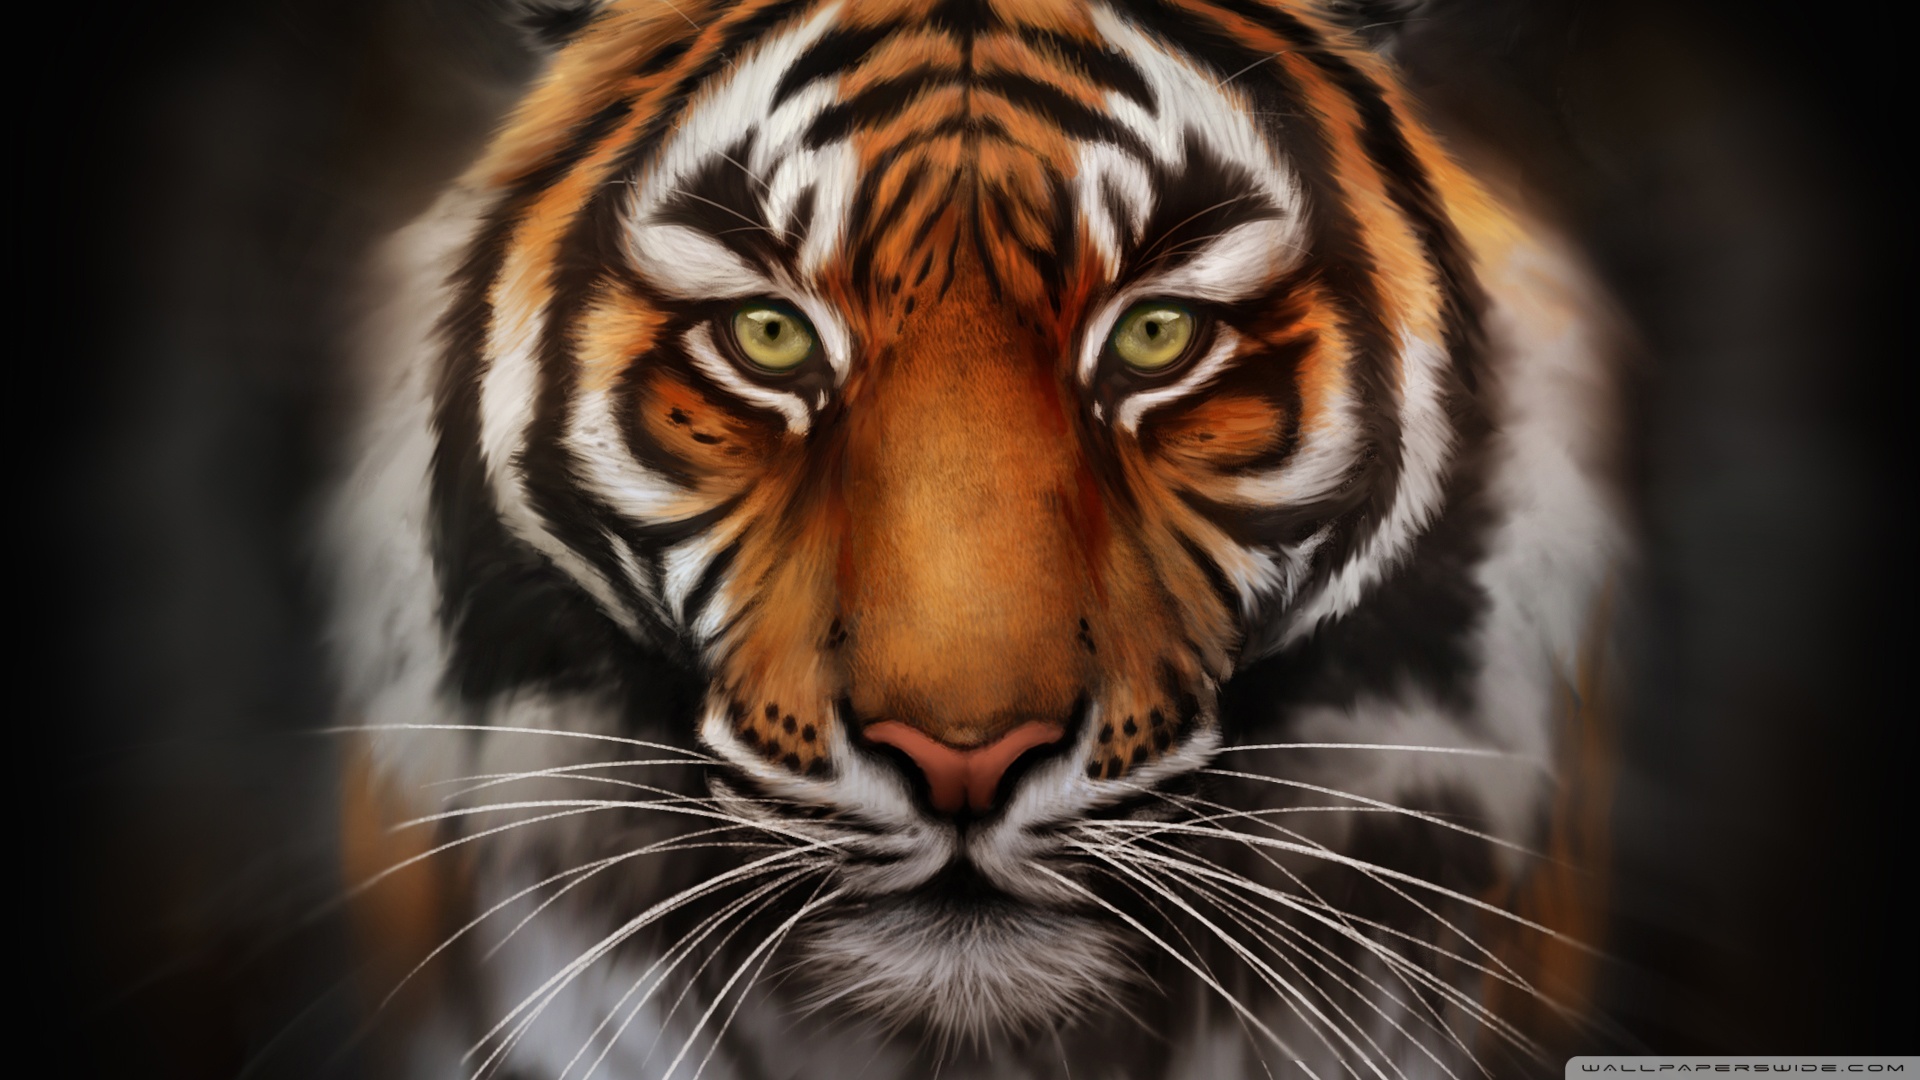 Save-The-Tiger HD desktop wallpaper : Widescreen : High Definition ...